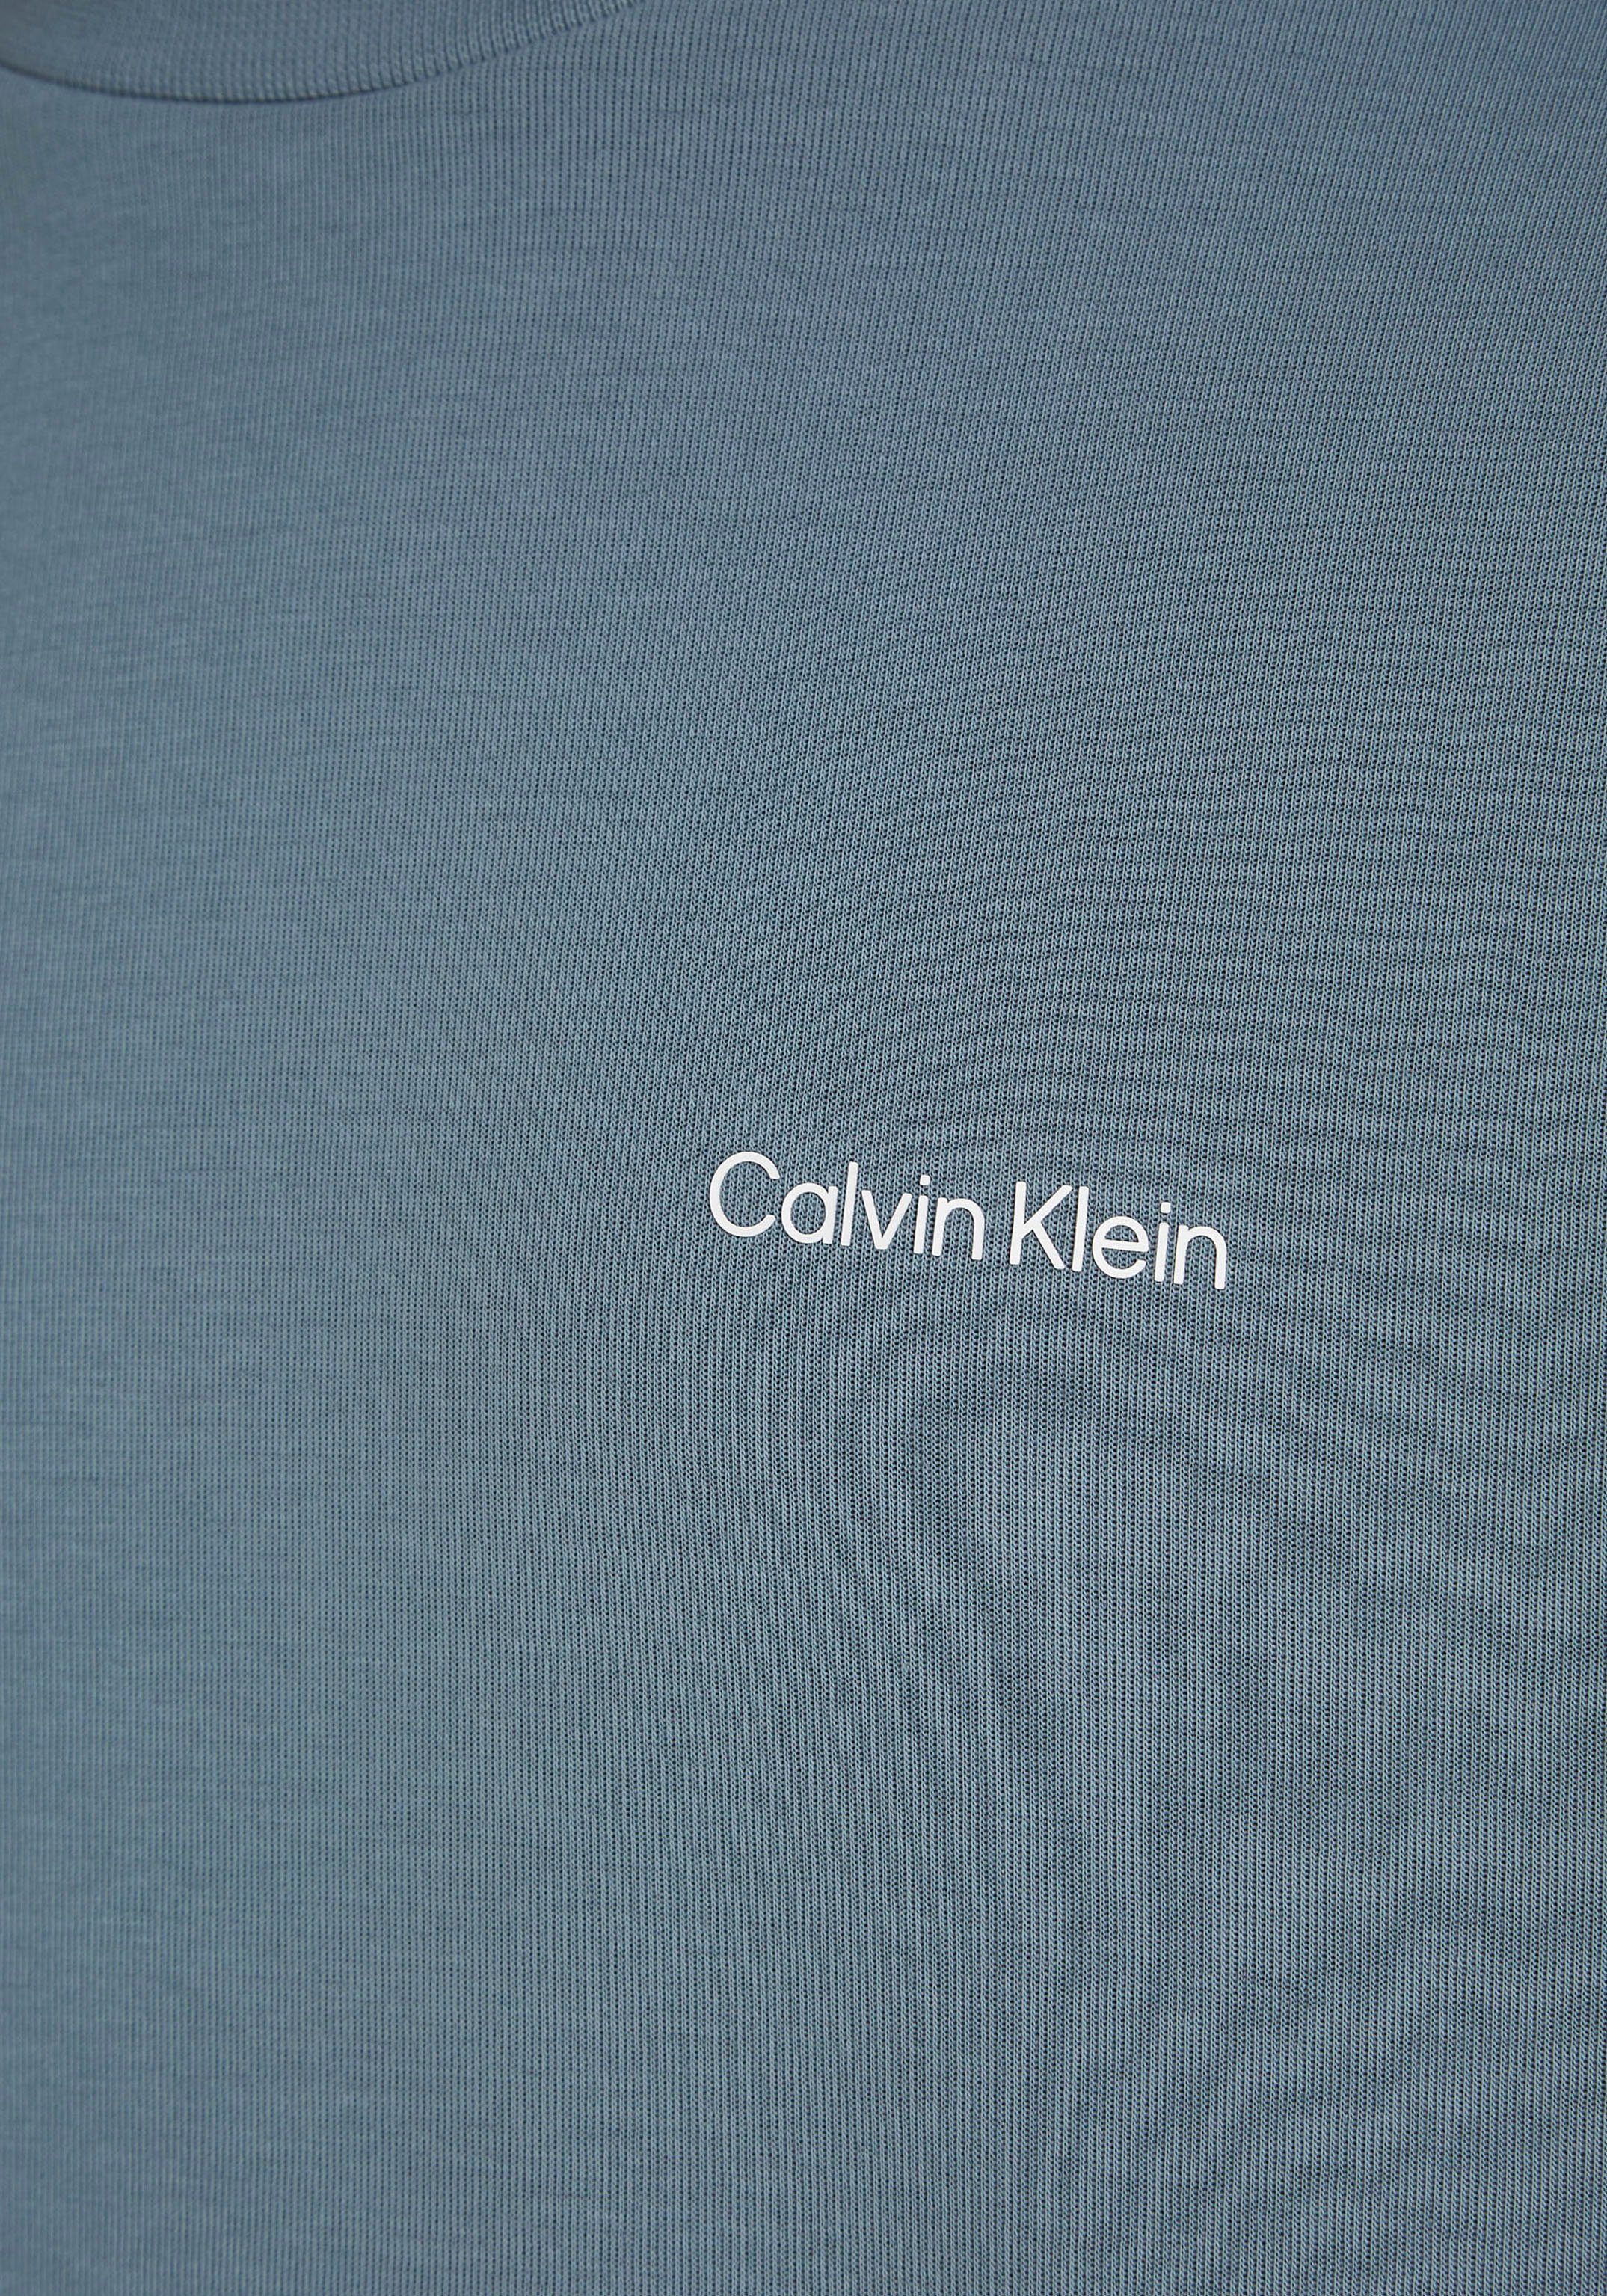 MICRO Sweatshirt Grey Klein Calvin halsnahmen Tar mit LOGO Rundhalsausschnitt SWEATSHIRT REPREVE